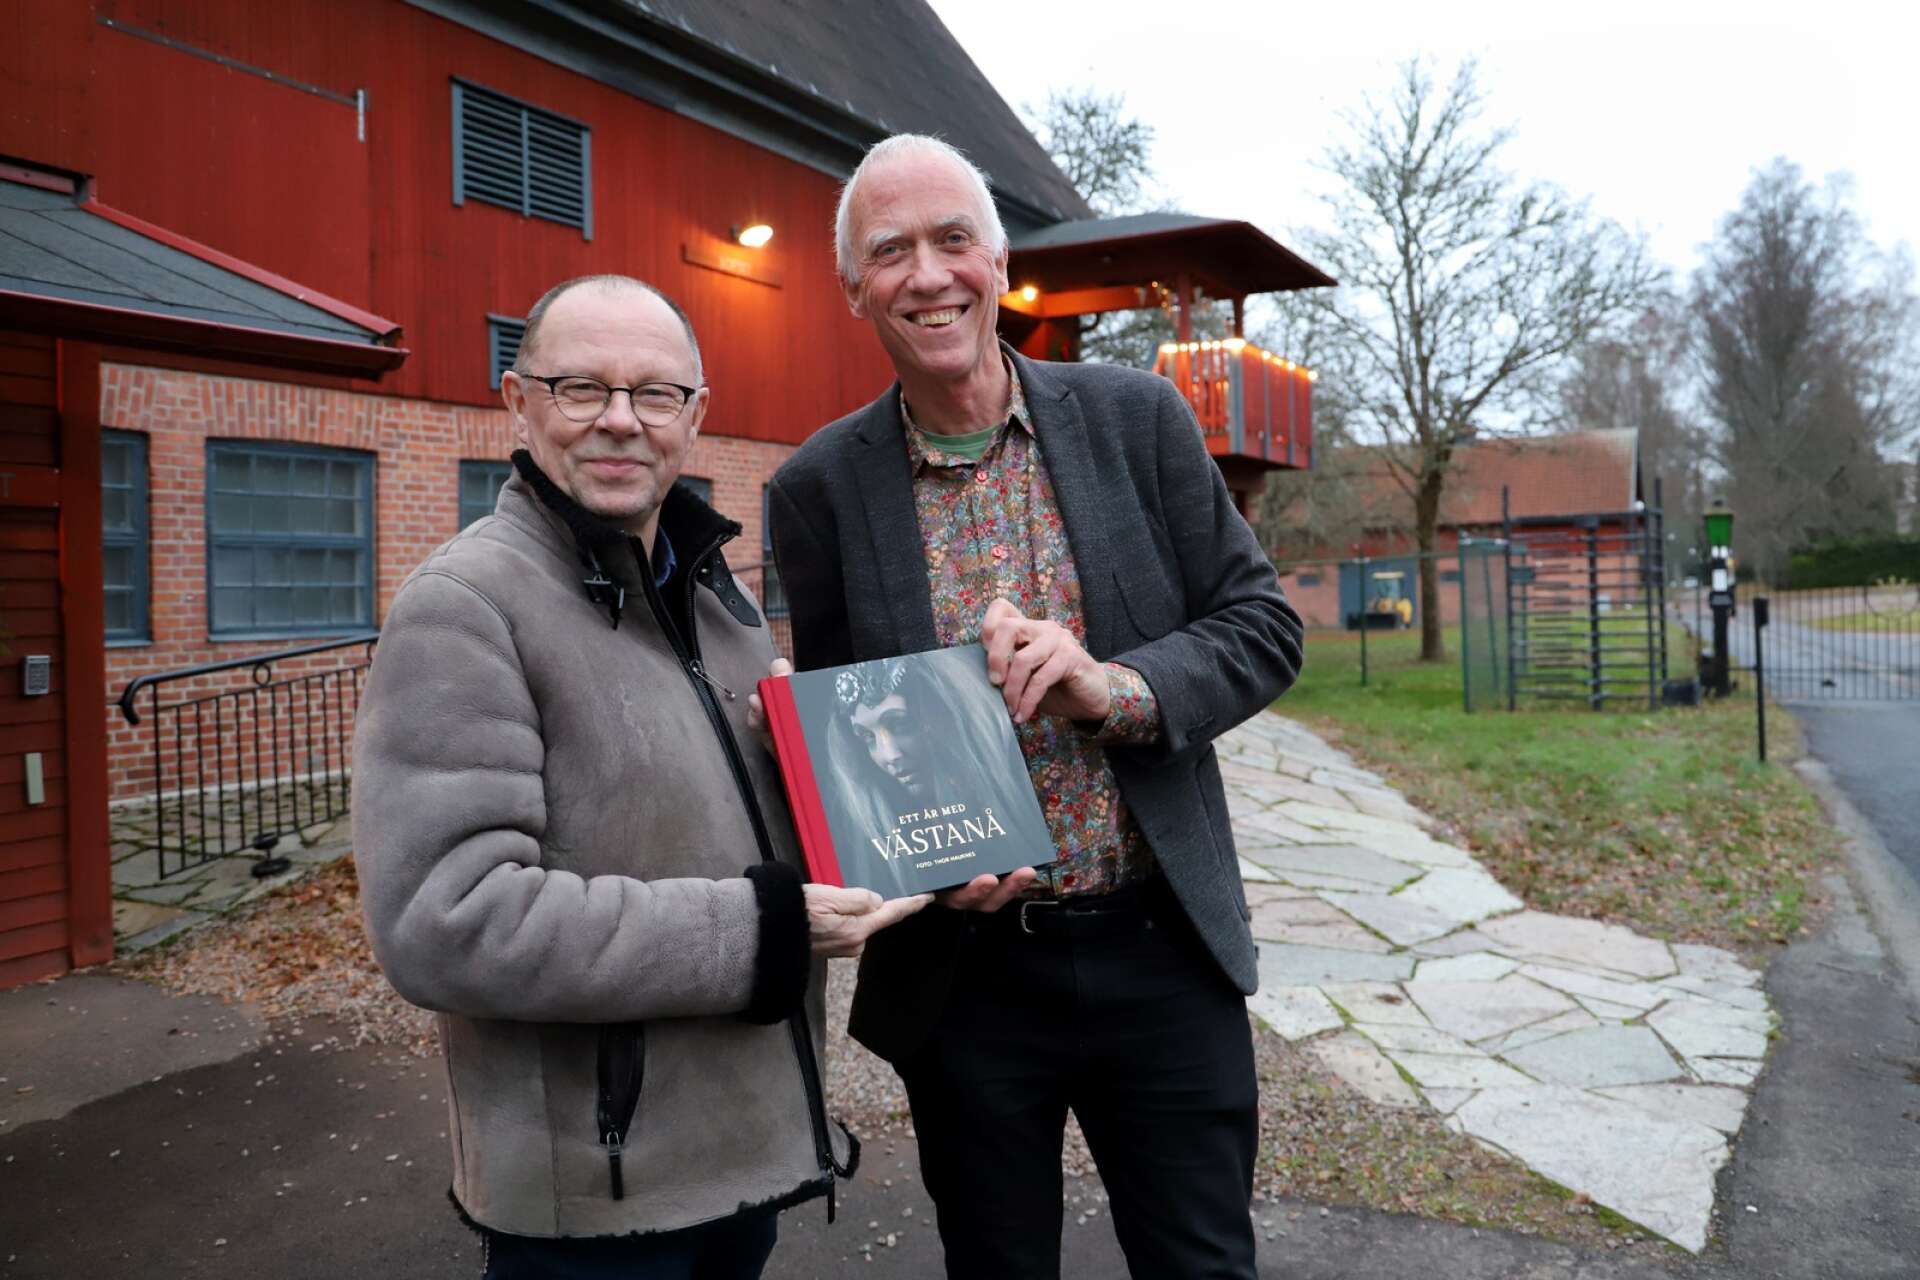 Fotografen Thor Hauknes (till höger) följde Västanå teater under ett år. Teaterchefen Leif Stinnerbom är nöjd med resultatet. ”Man blir lite förvånad själv hur mycket som kan ske på ett år. ”